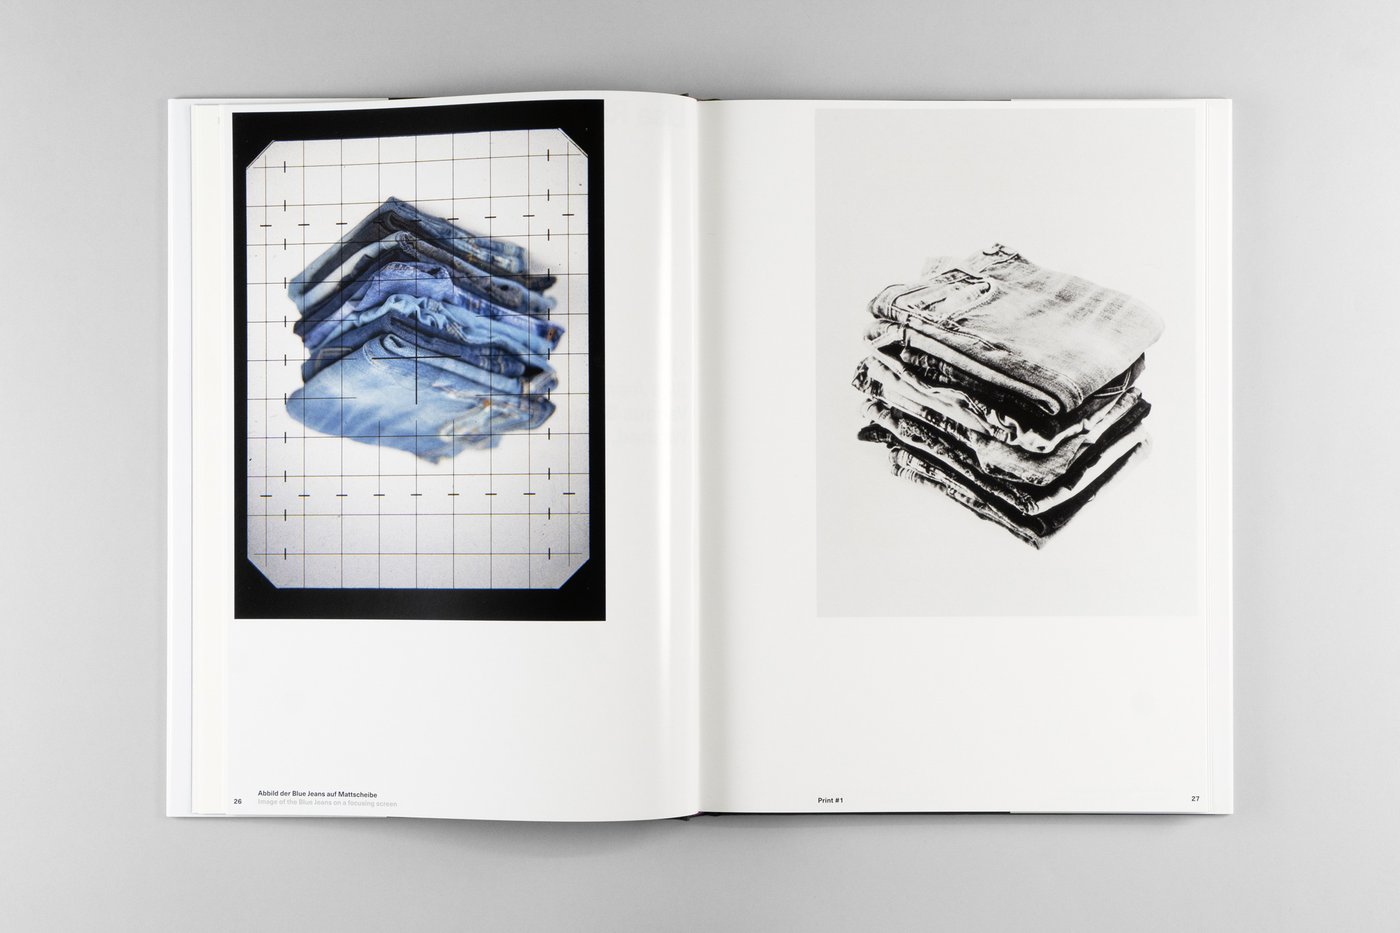 Doppelseite aus dem Buch Fotografie als Motiv mit dem Bildbeitrag von Lisa Rastl mit Fotografien von gefalteten und gestapelten Jeans, links in Farbe auf einer um 180 Grad gedrehten Abbildung, rechts in Graustufen.